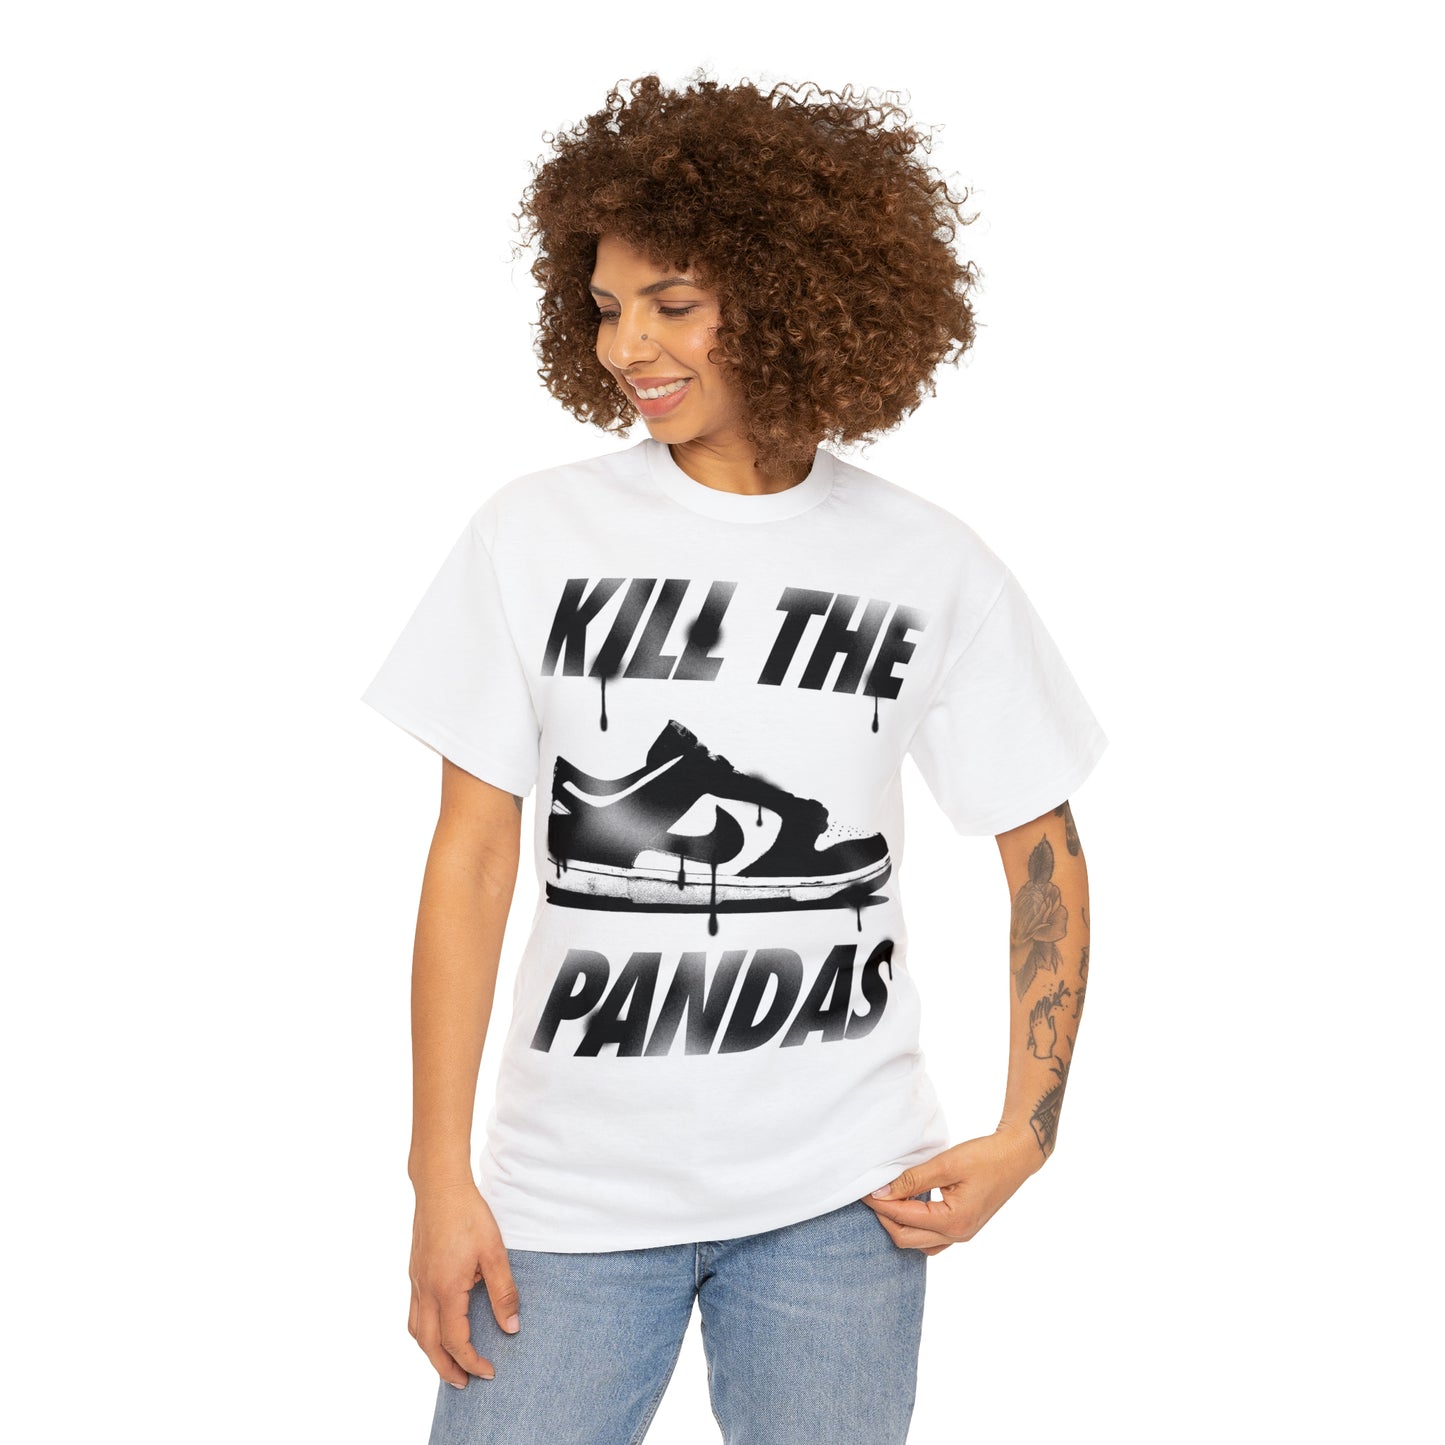 Kill the Pandas t-shirt